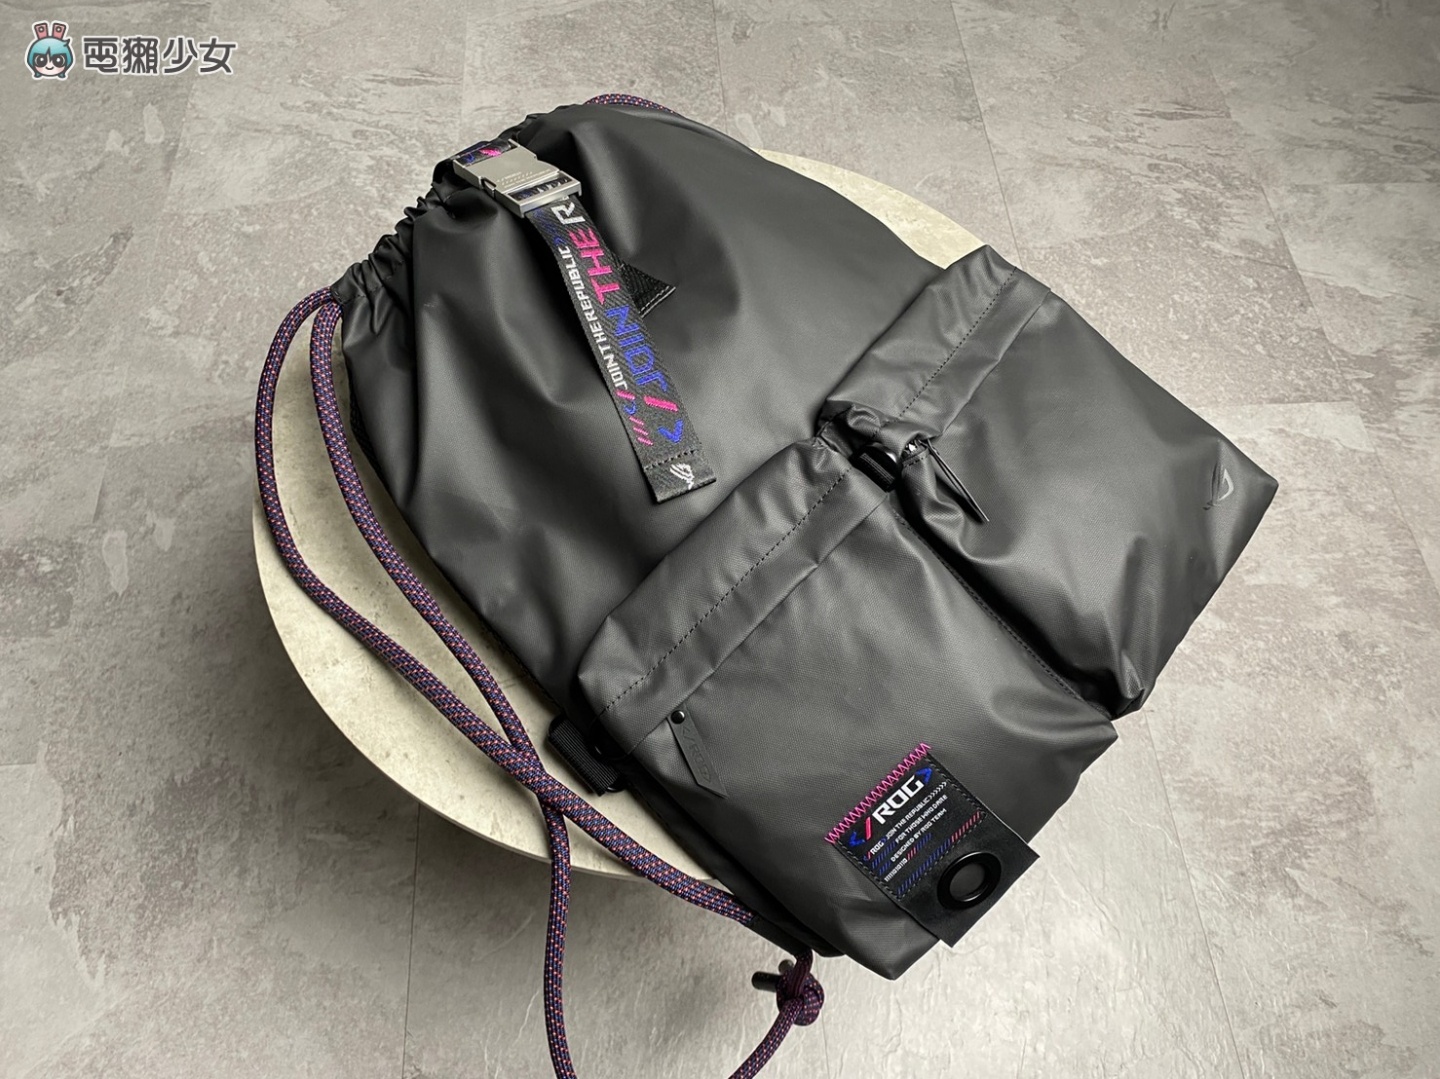 開箱｜潮！ROG SLASH 系列 配件 包包、帽子超有電競感 防潑水材質好加分